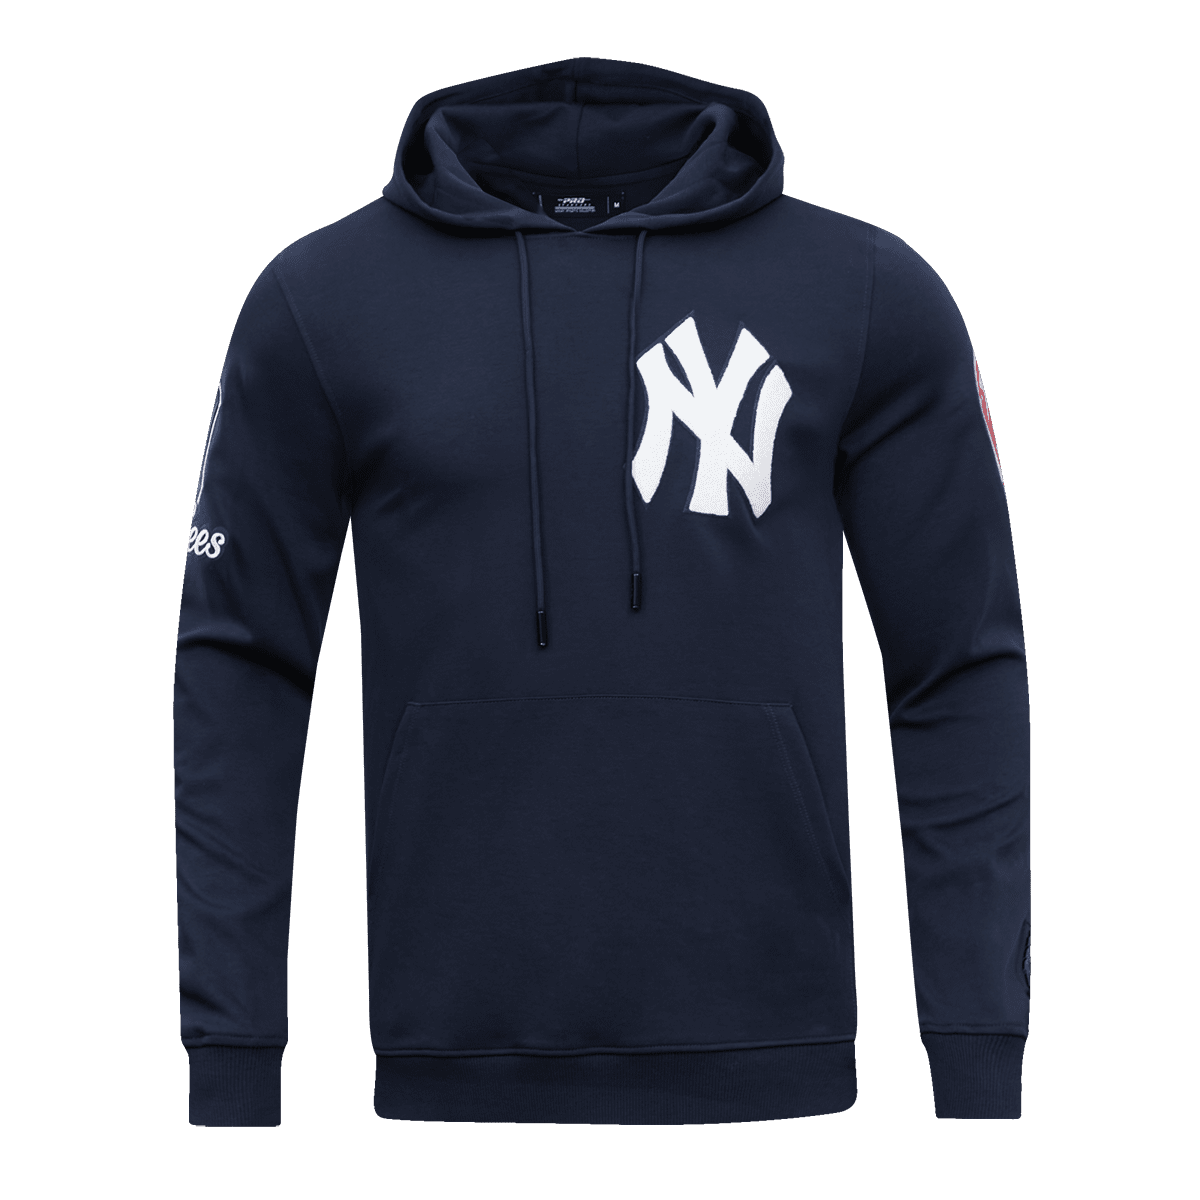 Stone Cold Luke Voit T-Shirt + Hoodie, New York Yankees